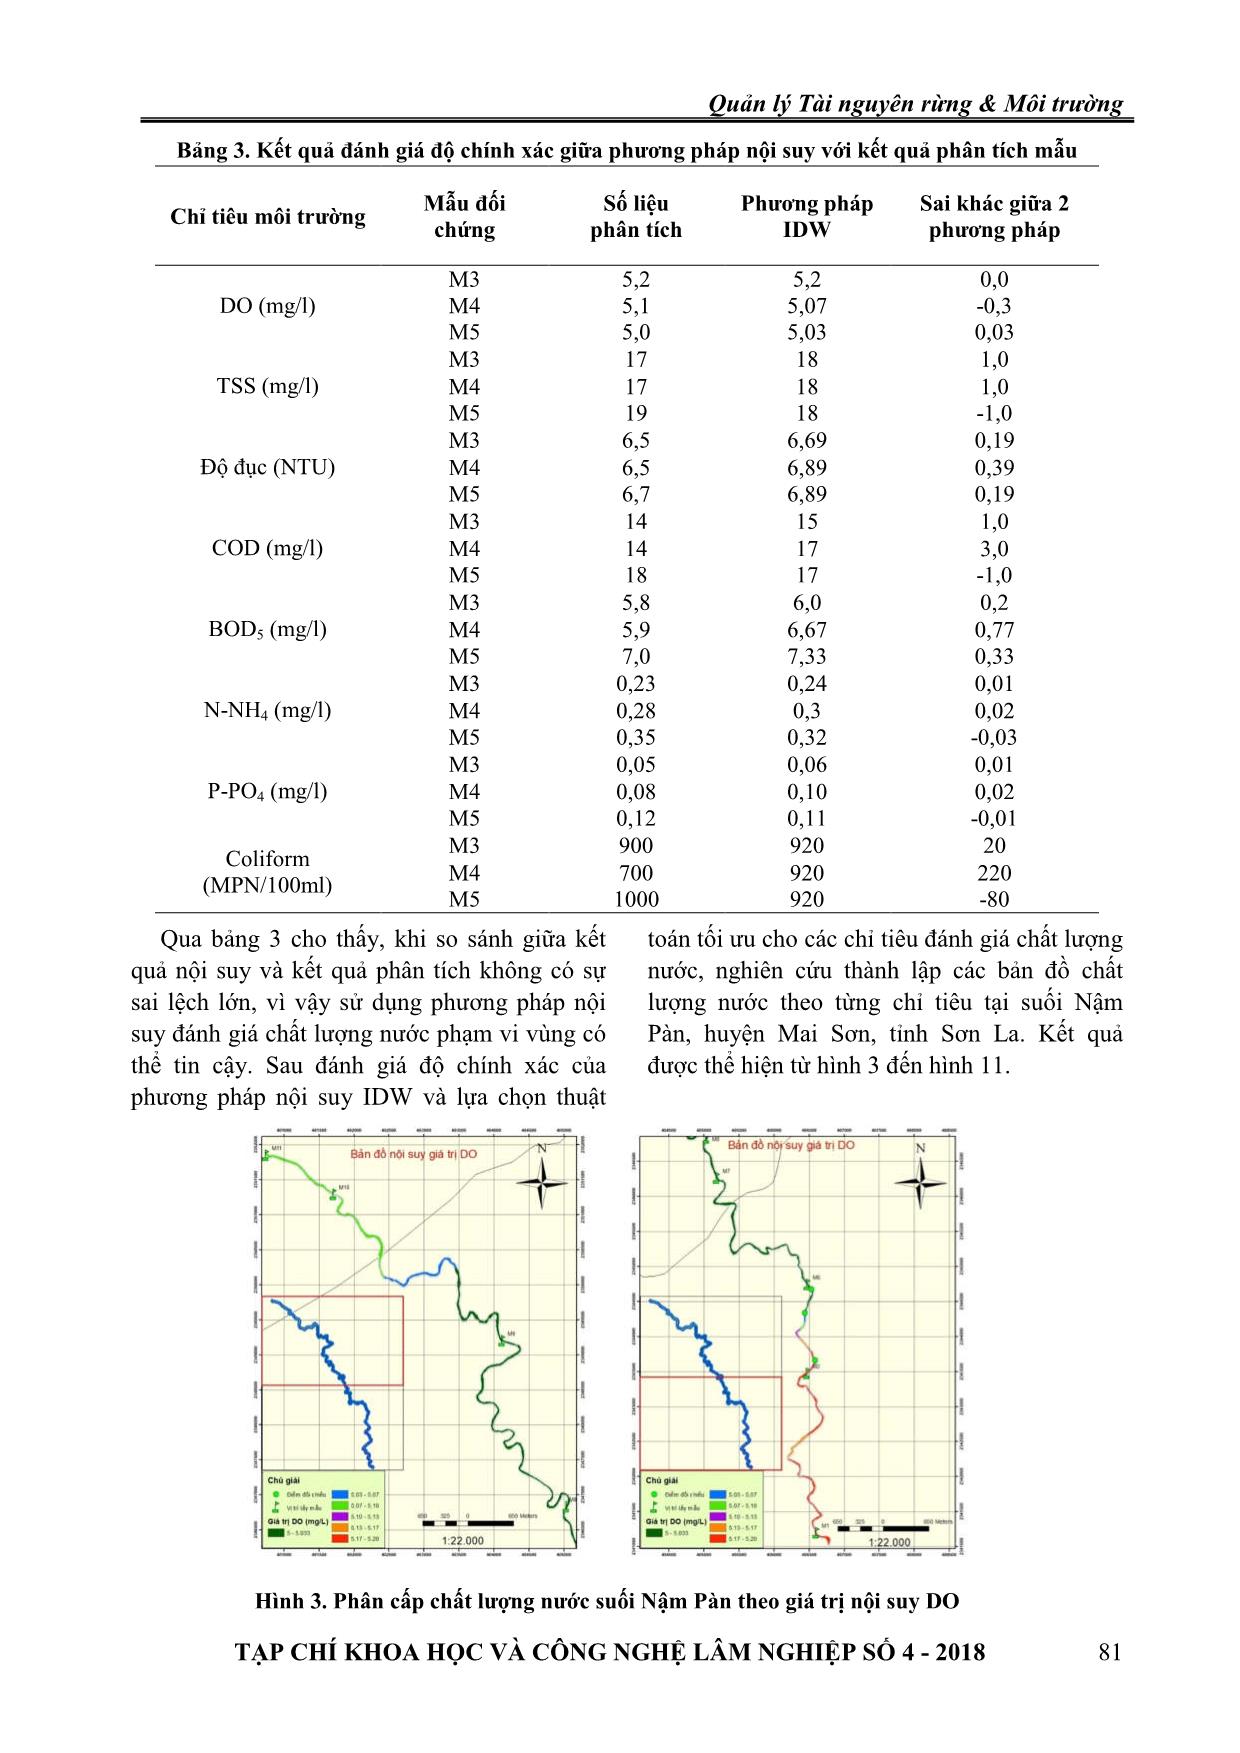 Ứng dụng GIS và thuật toán nội suy xây dựng bản đồ chất lượng nước suối Nậm Pàn chảy qua huyện Mai Sơn, tỉnh Sơn La trang 5